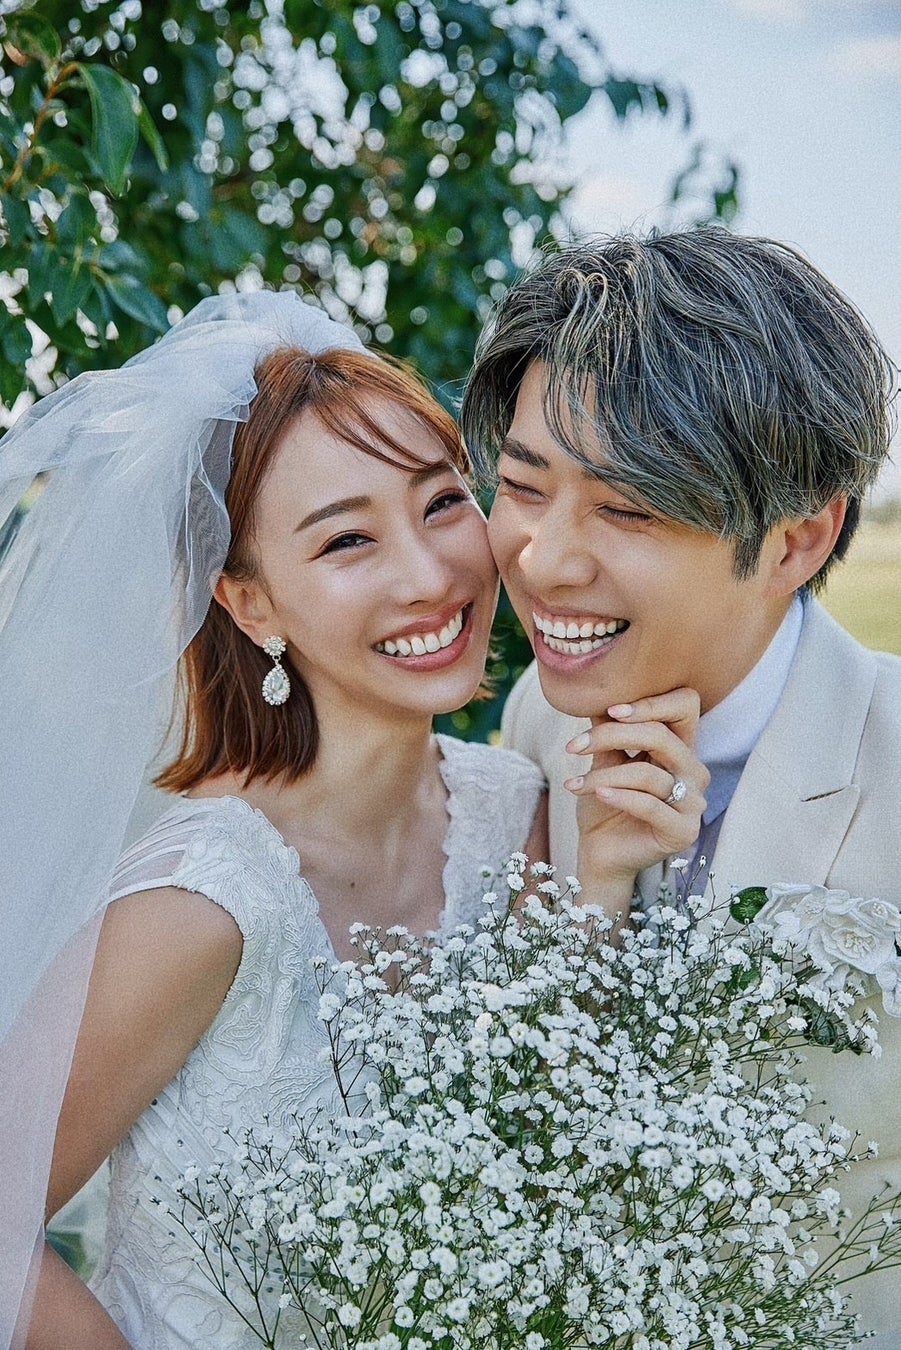 『バチェラー・ジャパン』シーズン4 黄皓・秋倉諒子が結婚「真実の愛を見つけました」